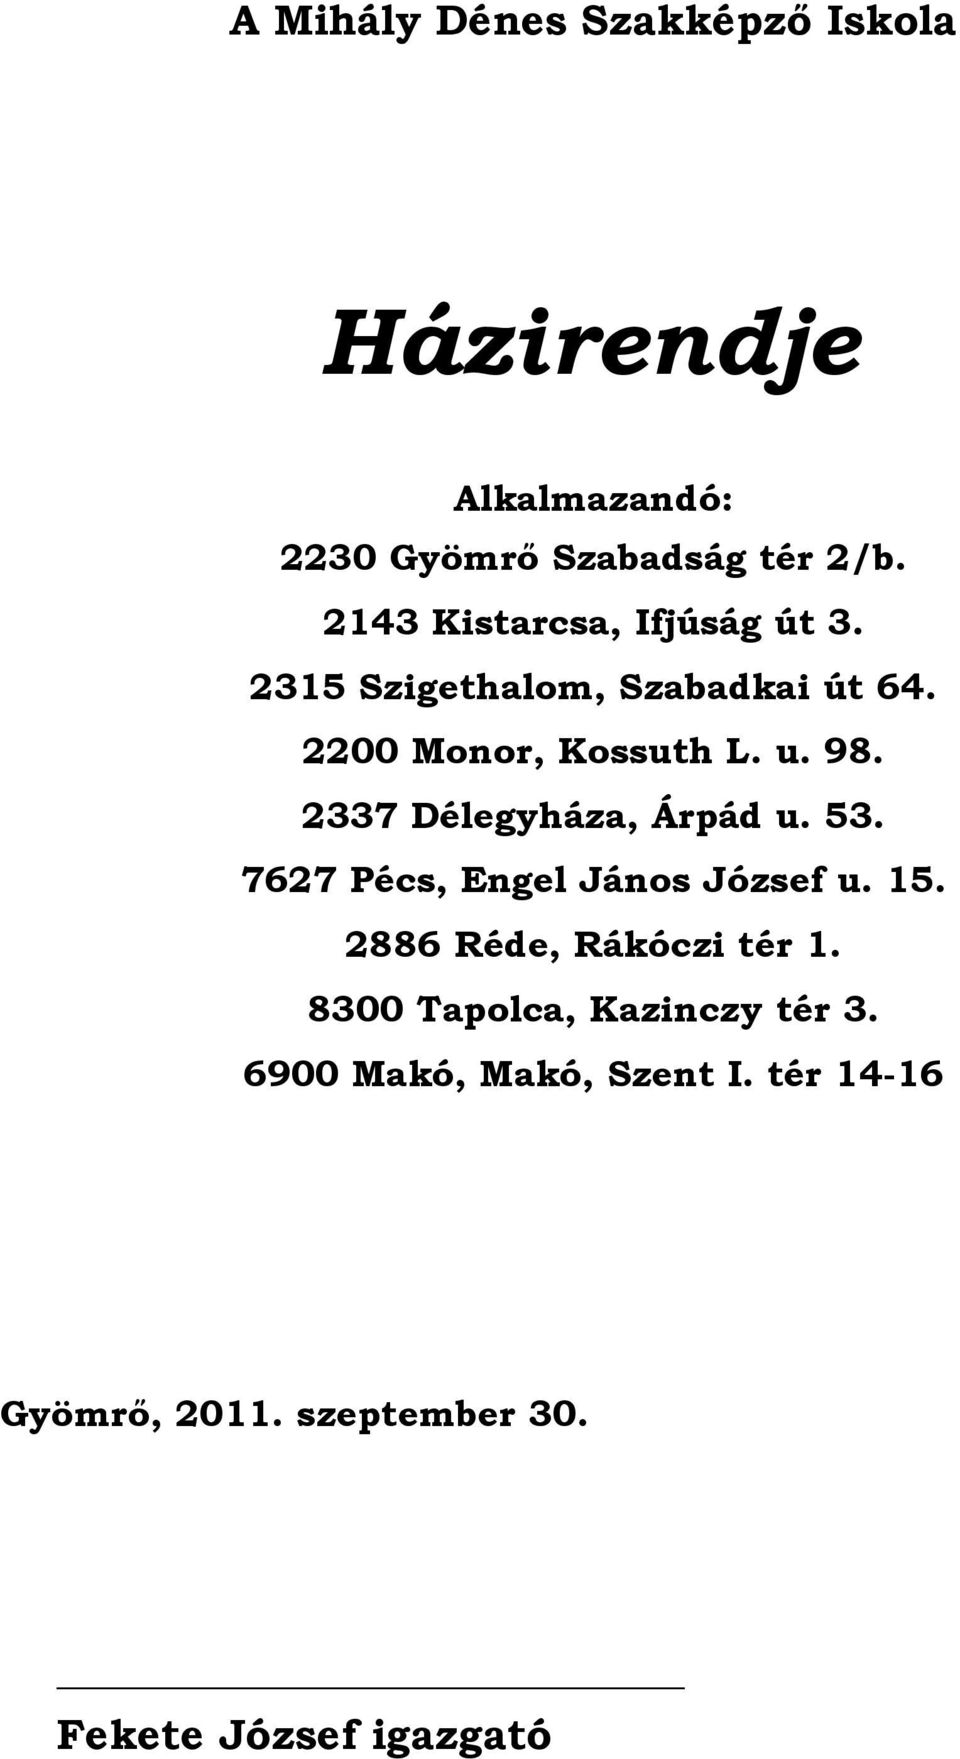 2337 Délegyháza, Árpád u. 53. 7627 Pécs, Engel János József u. 15. 2886 Réde, Rákóczi tér 1.